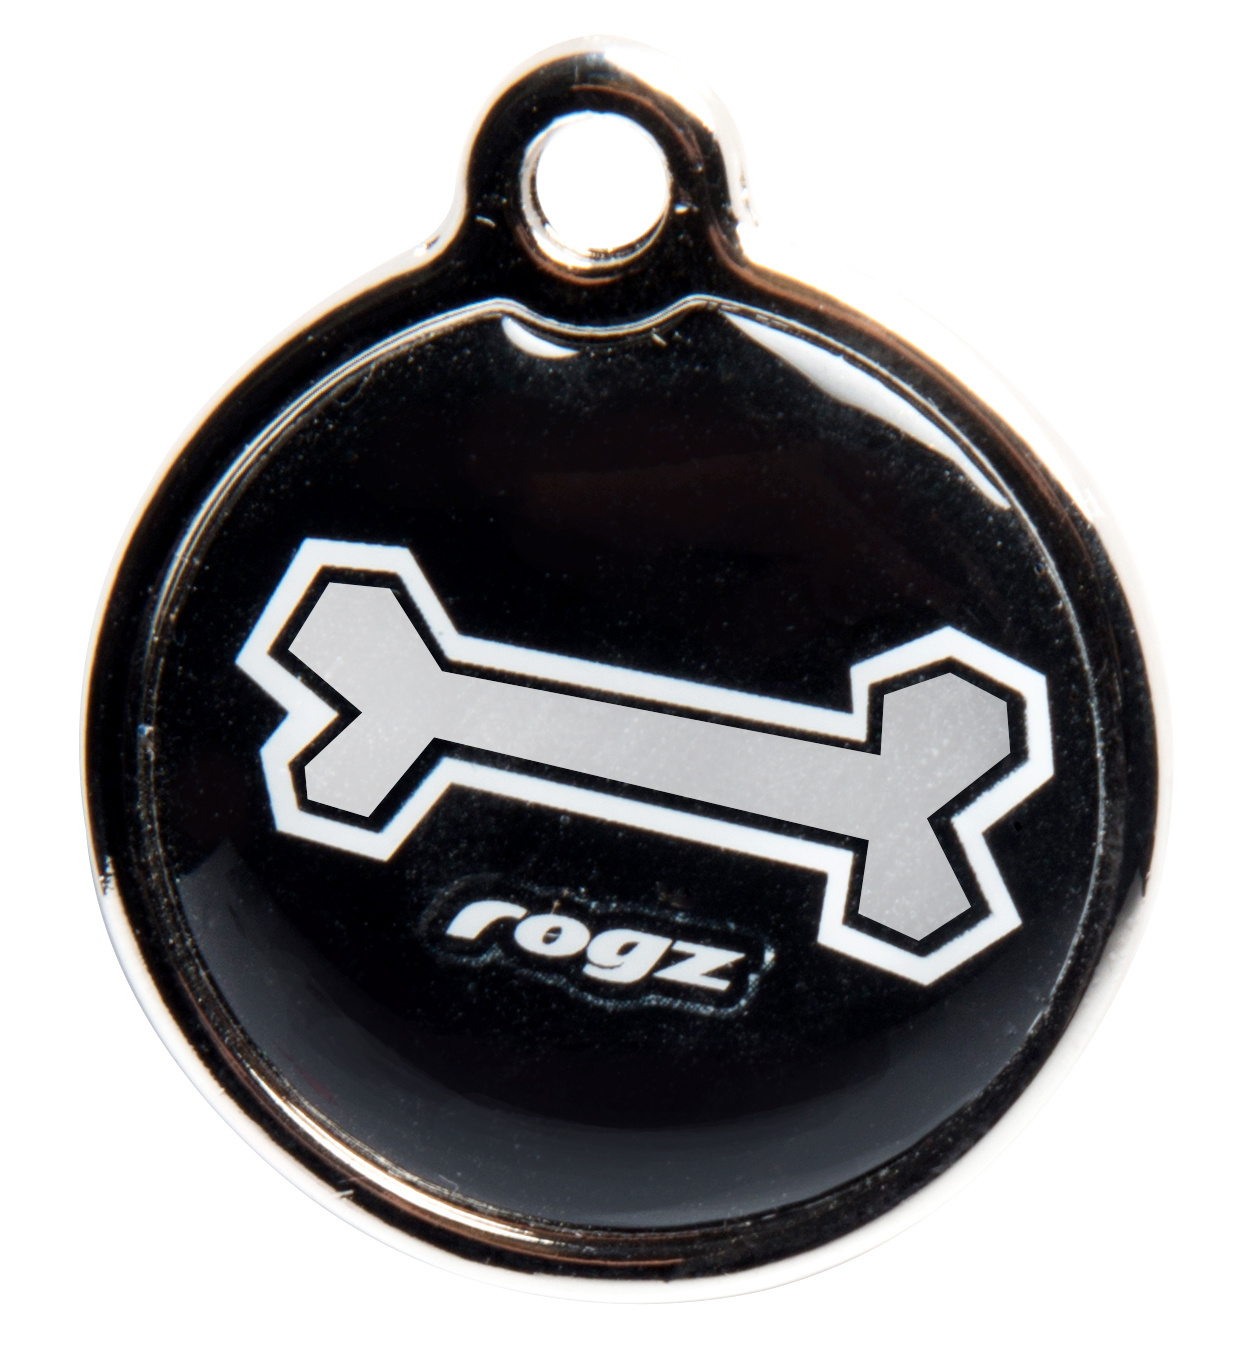 Rogz Rogz адресник металлический Черная косточка (S) rogz id tag small black bone s адресник пластиковый готовый к пользованию черный 27 мм